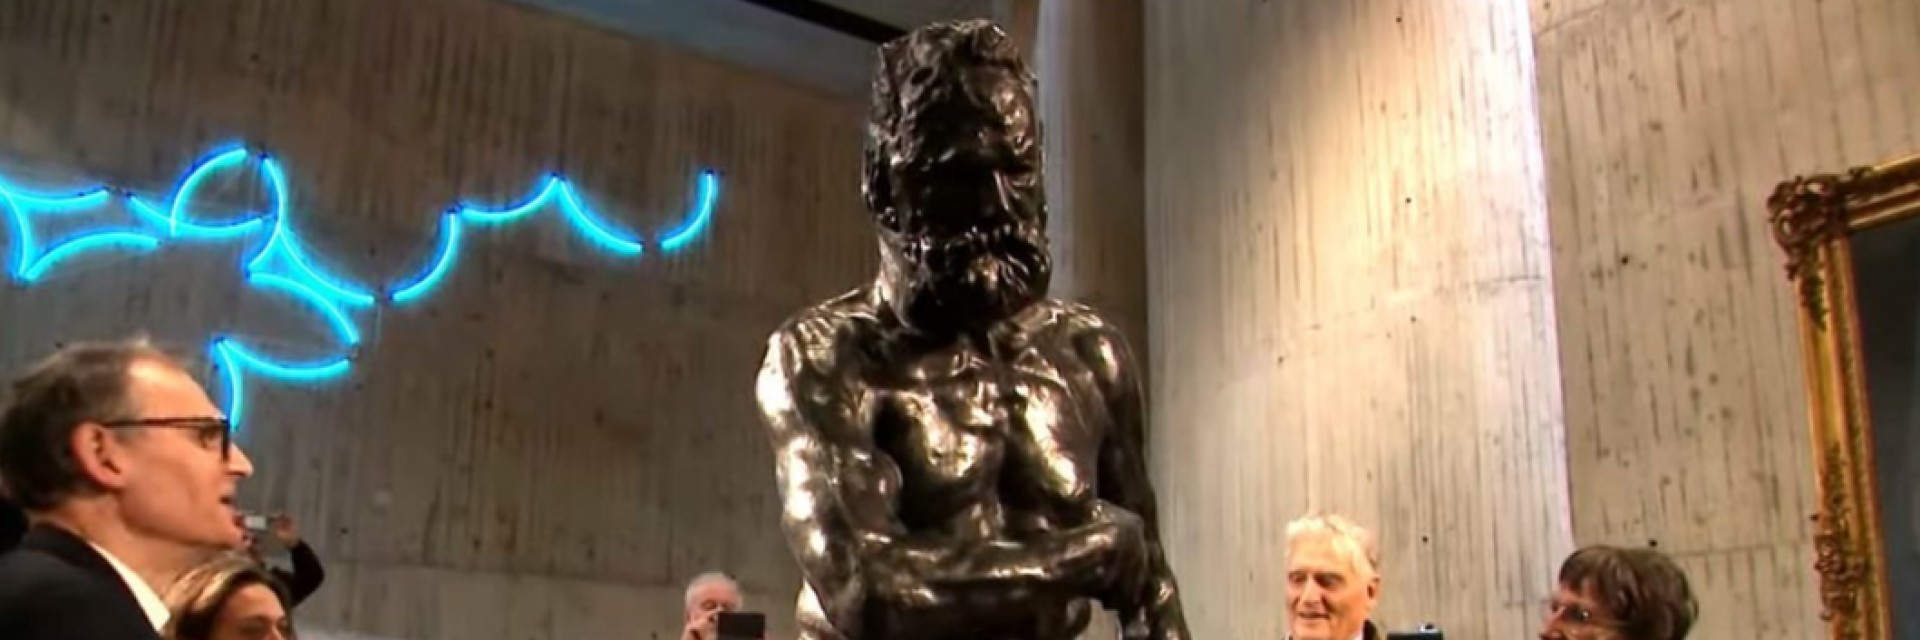 Статуя на Виктор Юго от Роден бе открита официално в Безансон